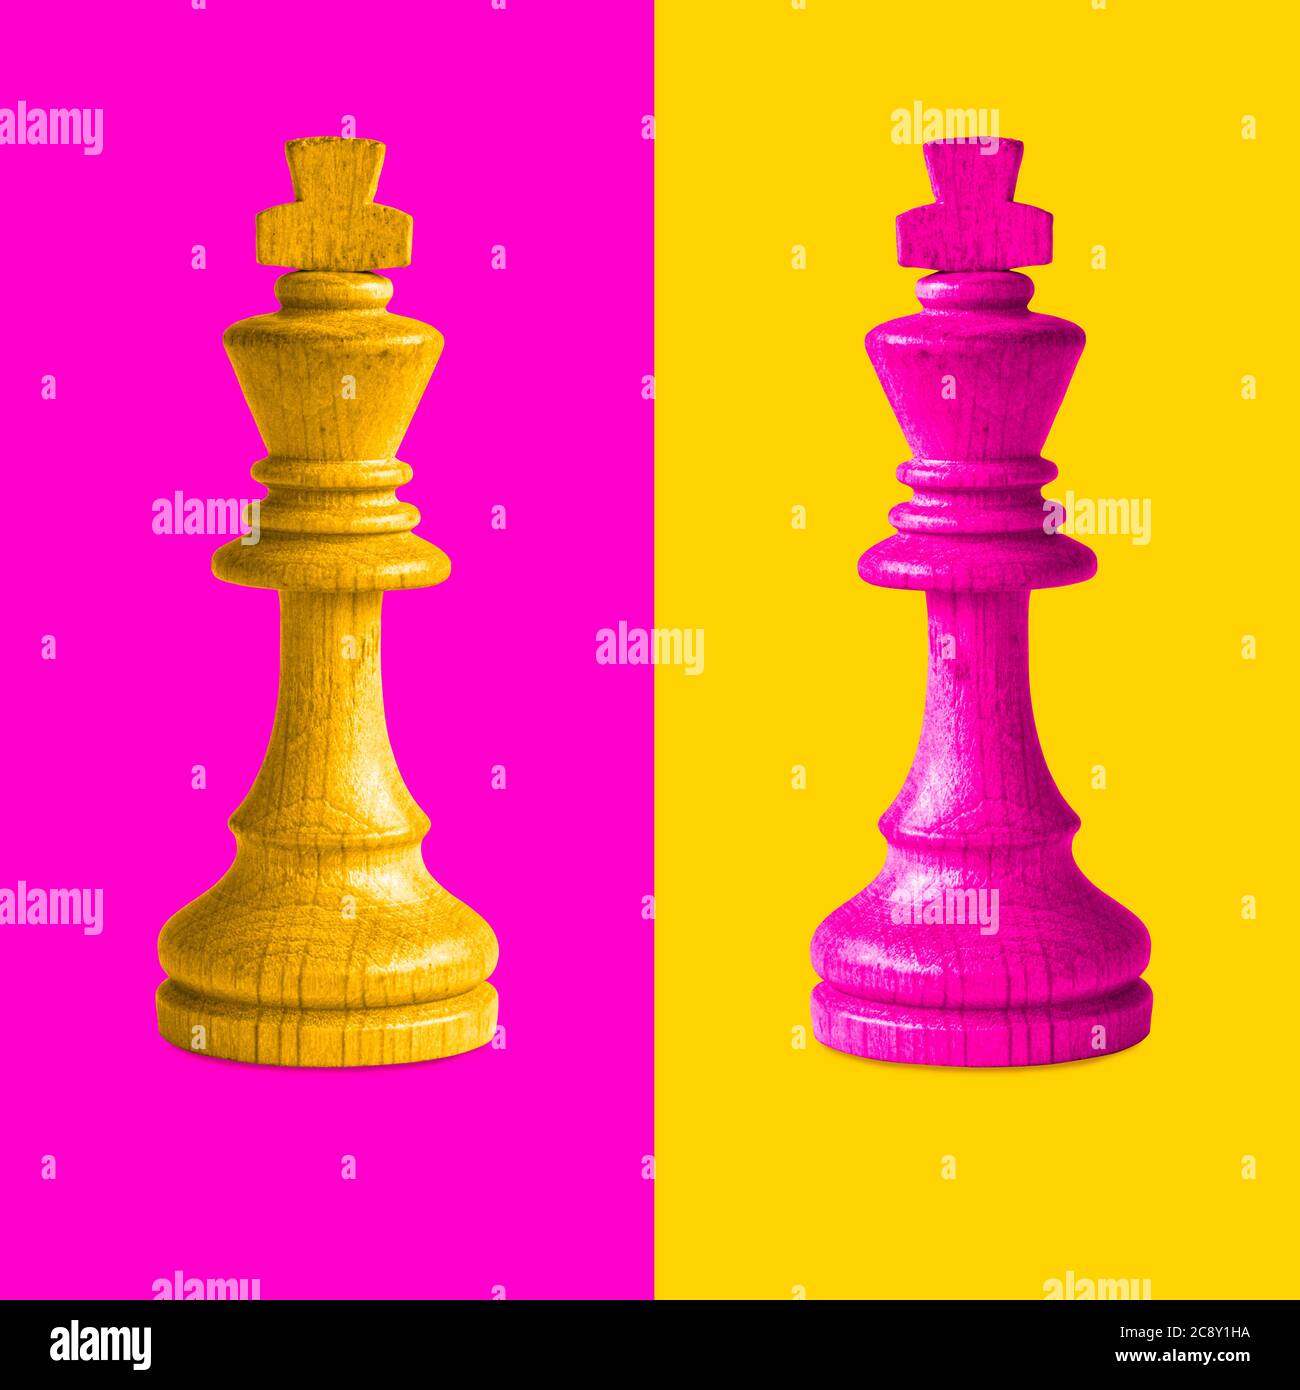 Coppia di pezzi di scacchi del re confrontati come opposti su sfondo rosa e giallo. Foto Stock